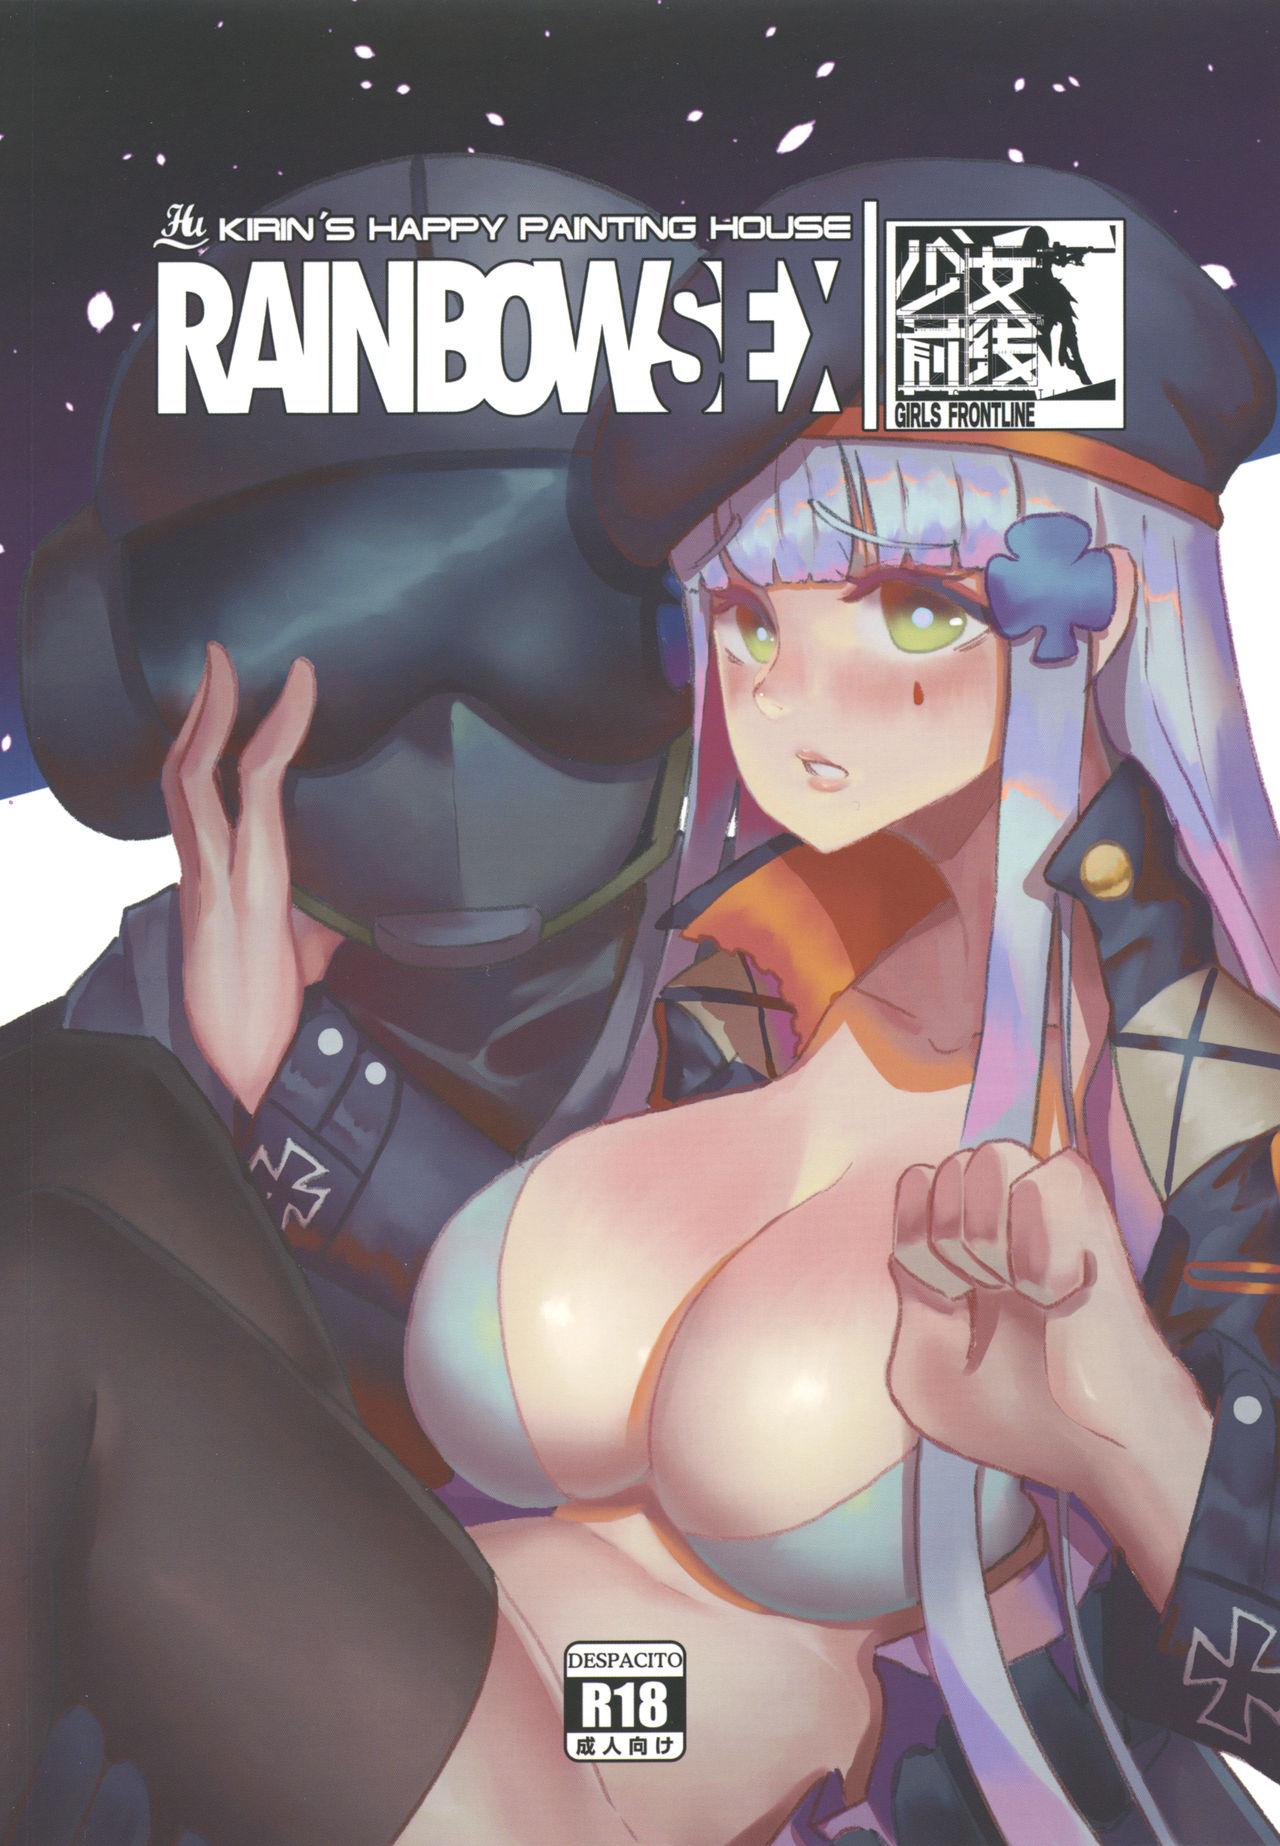 RAINBOW SEX/HK416 0